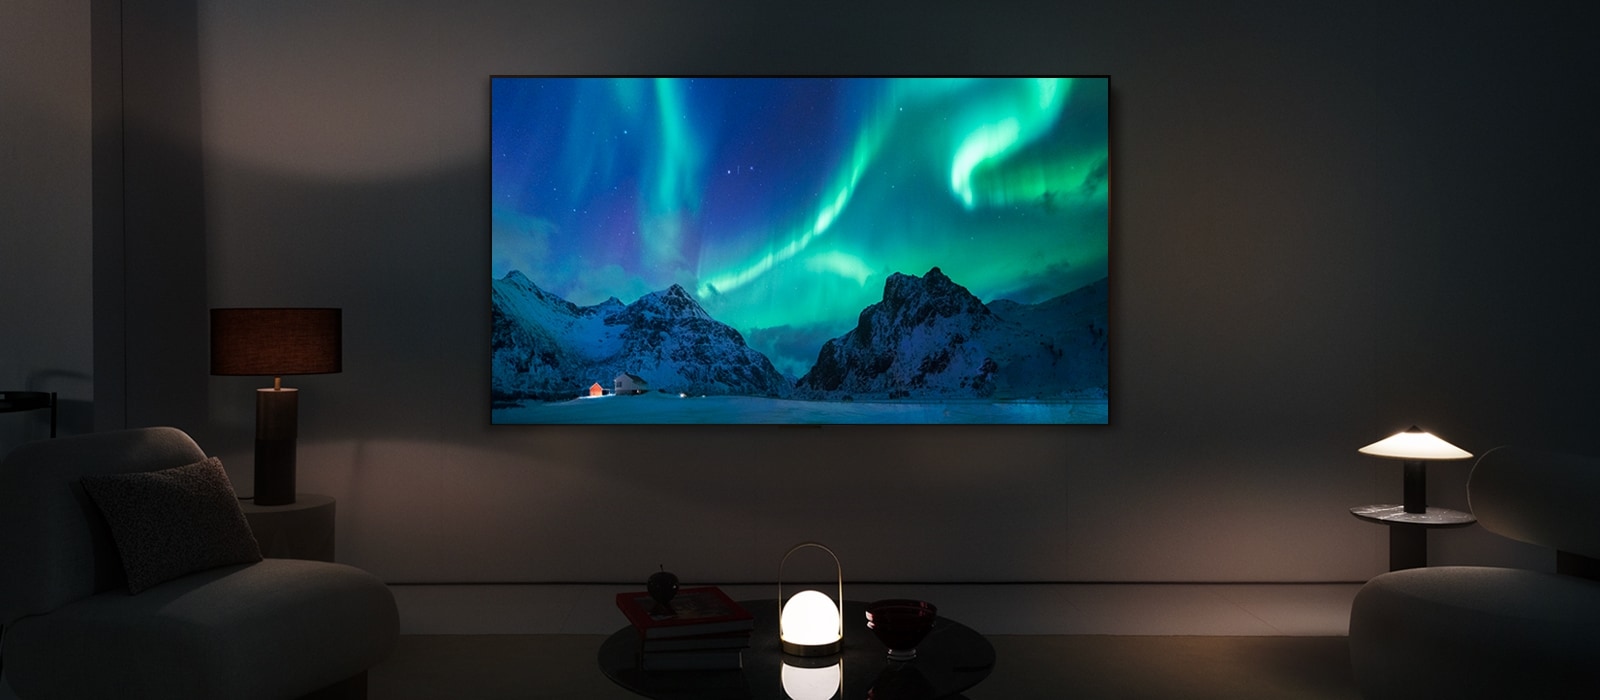 LG OLED TV och LG Soundbar i ett modernt vardagsrum på natten. Skärmbilden av norrskenet visas med idealiska ljusnivåer.